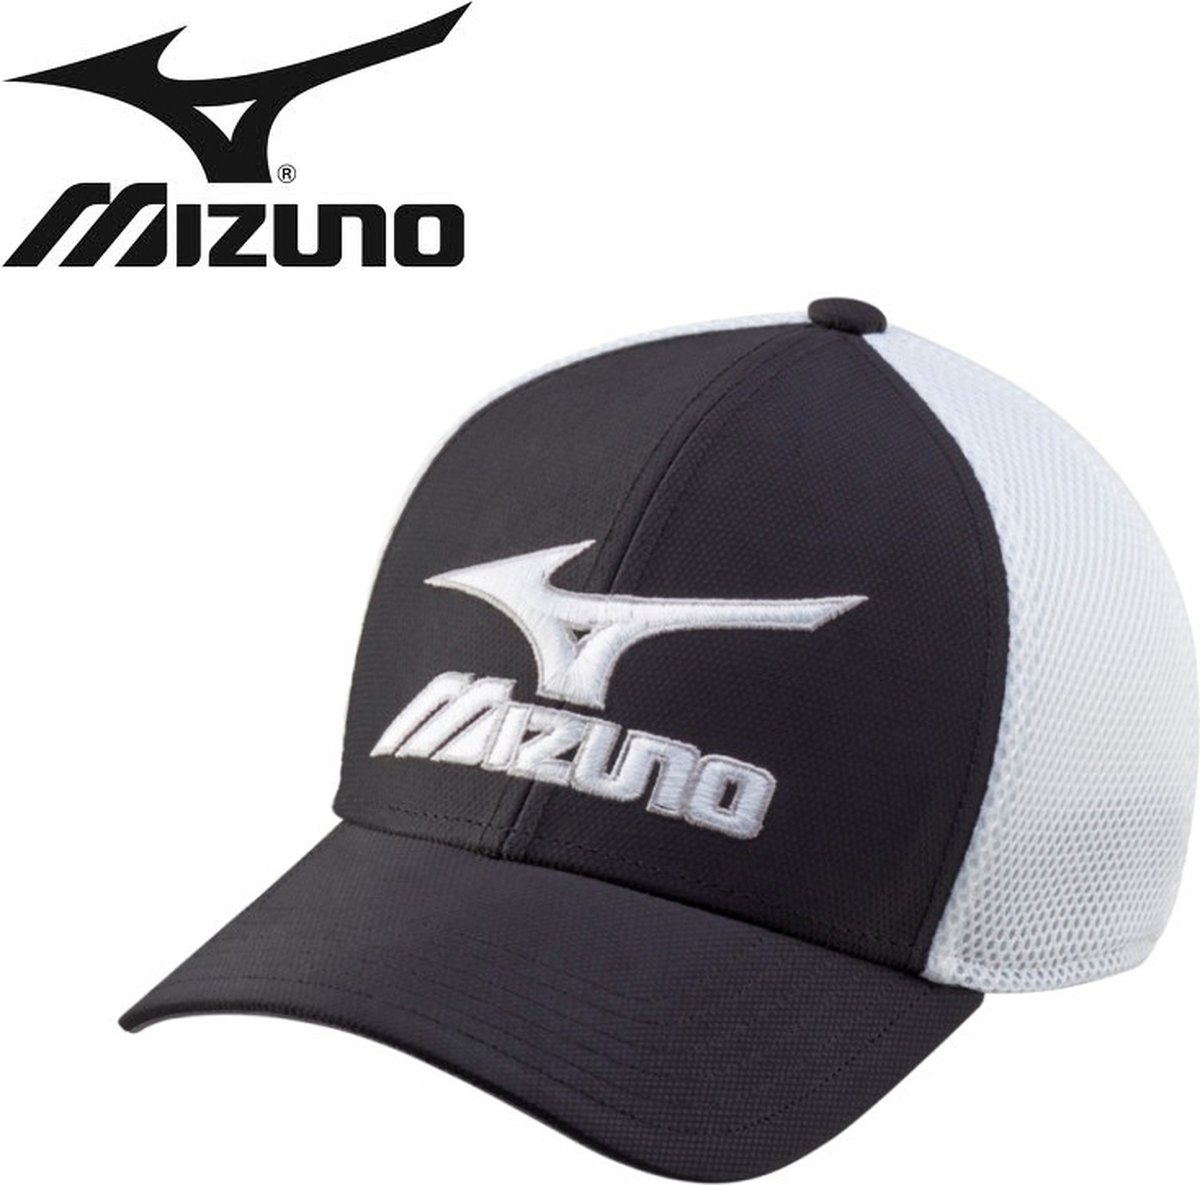 Mizuno - Golfcap - Phantom - Zwart-wit